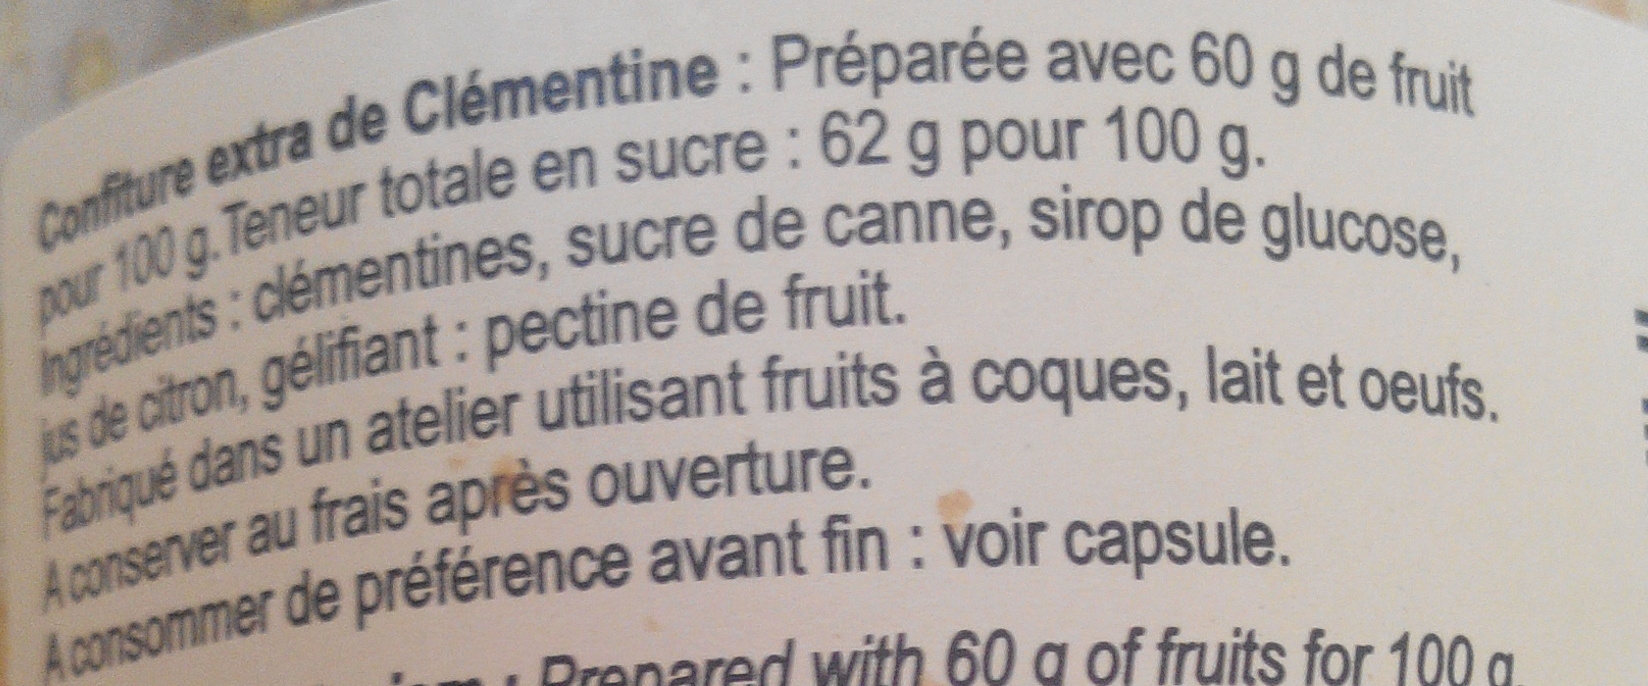 Clémentine - Confiture extra de Corse - Ingrédients